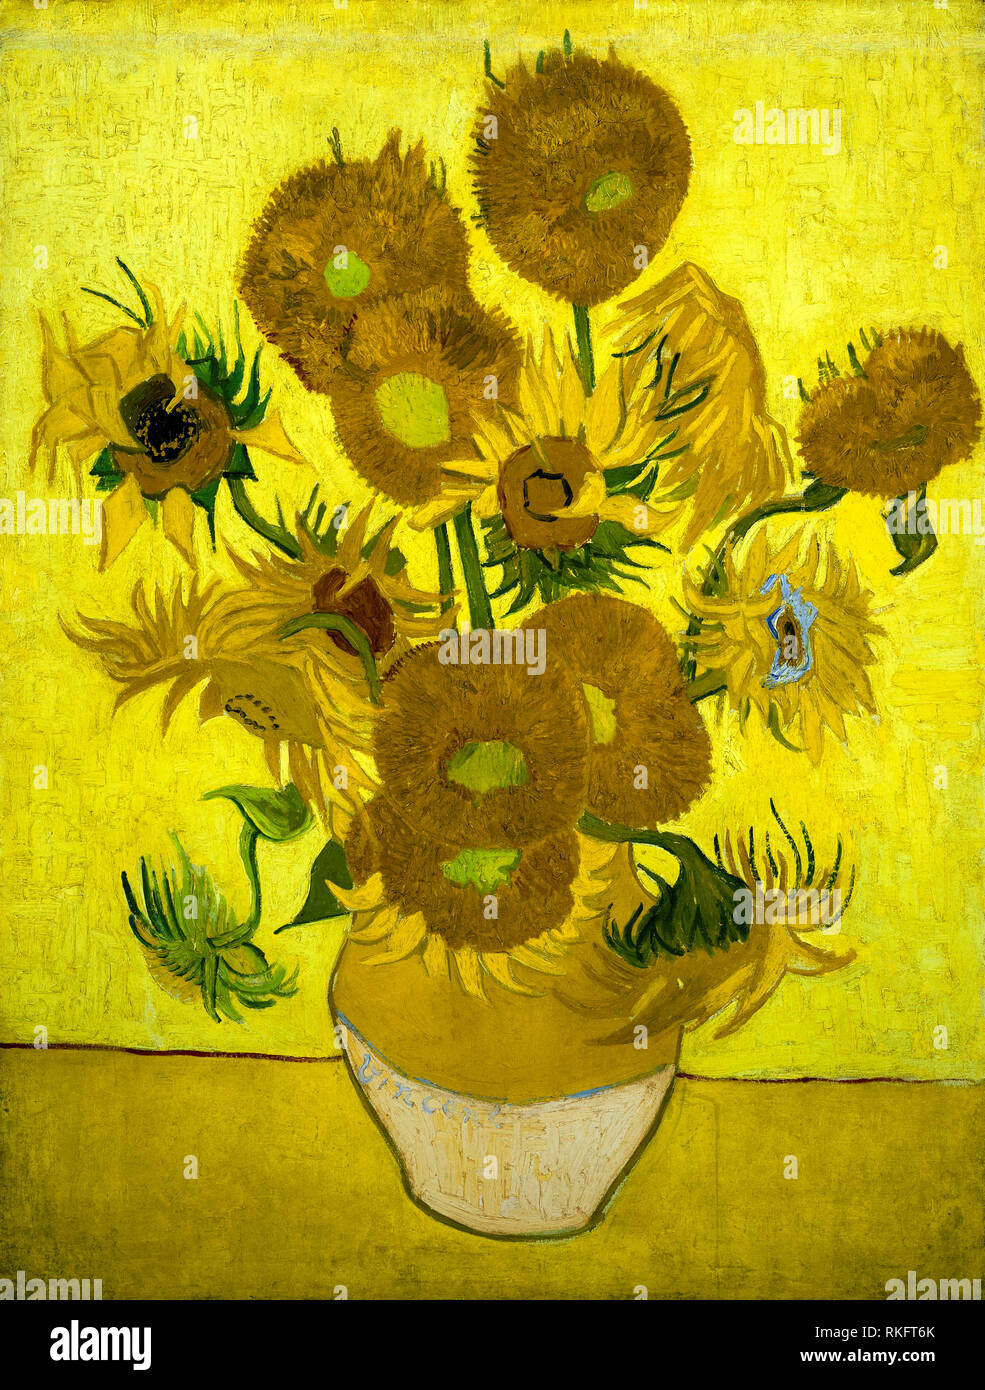 Sonnenblumen, Van Gogh. Sonnenblumen-Vase des holländischen Malers Vincent Van Gogh, gemalt in Öl auf Leinwand, 1889 Stockfoto